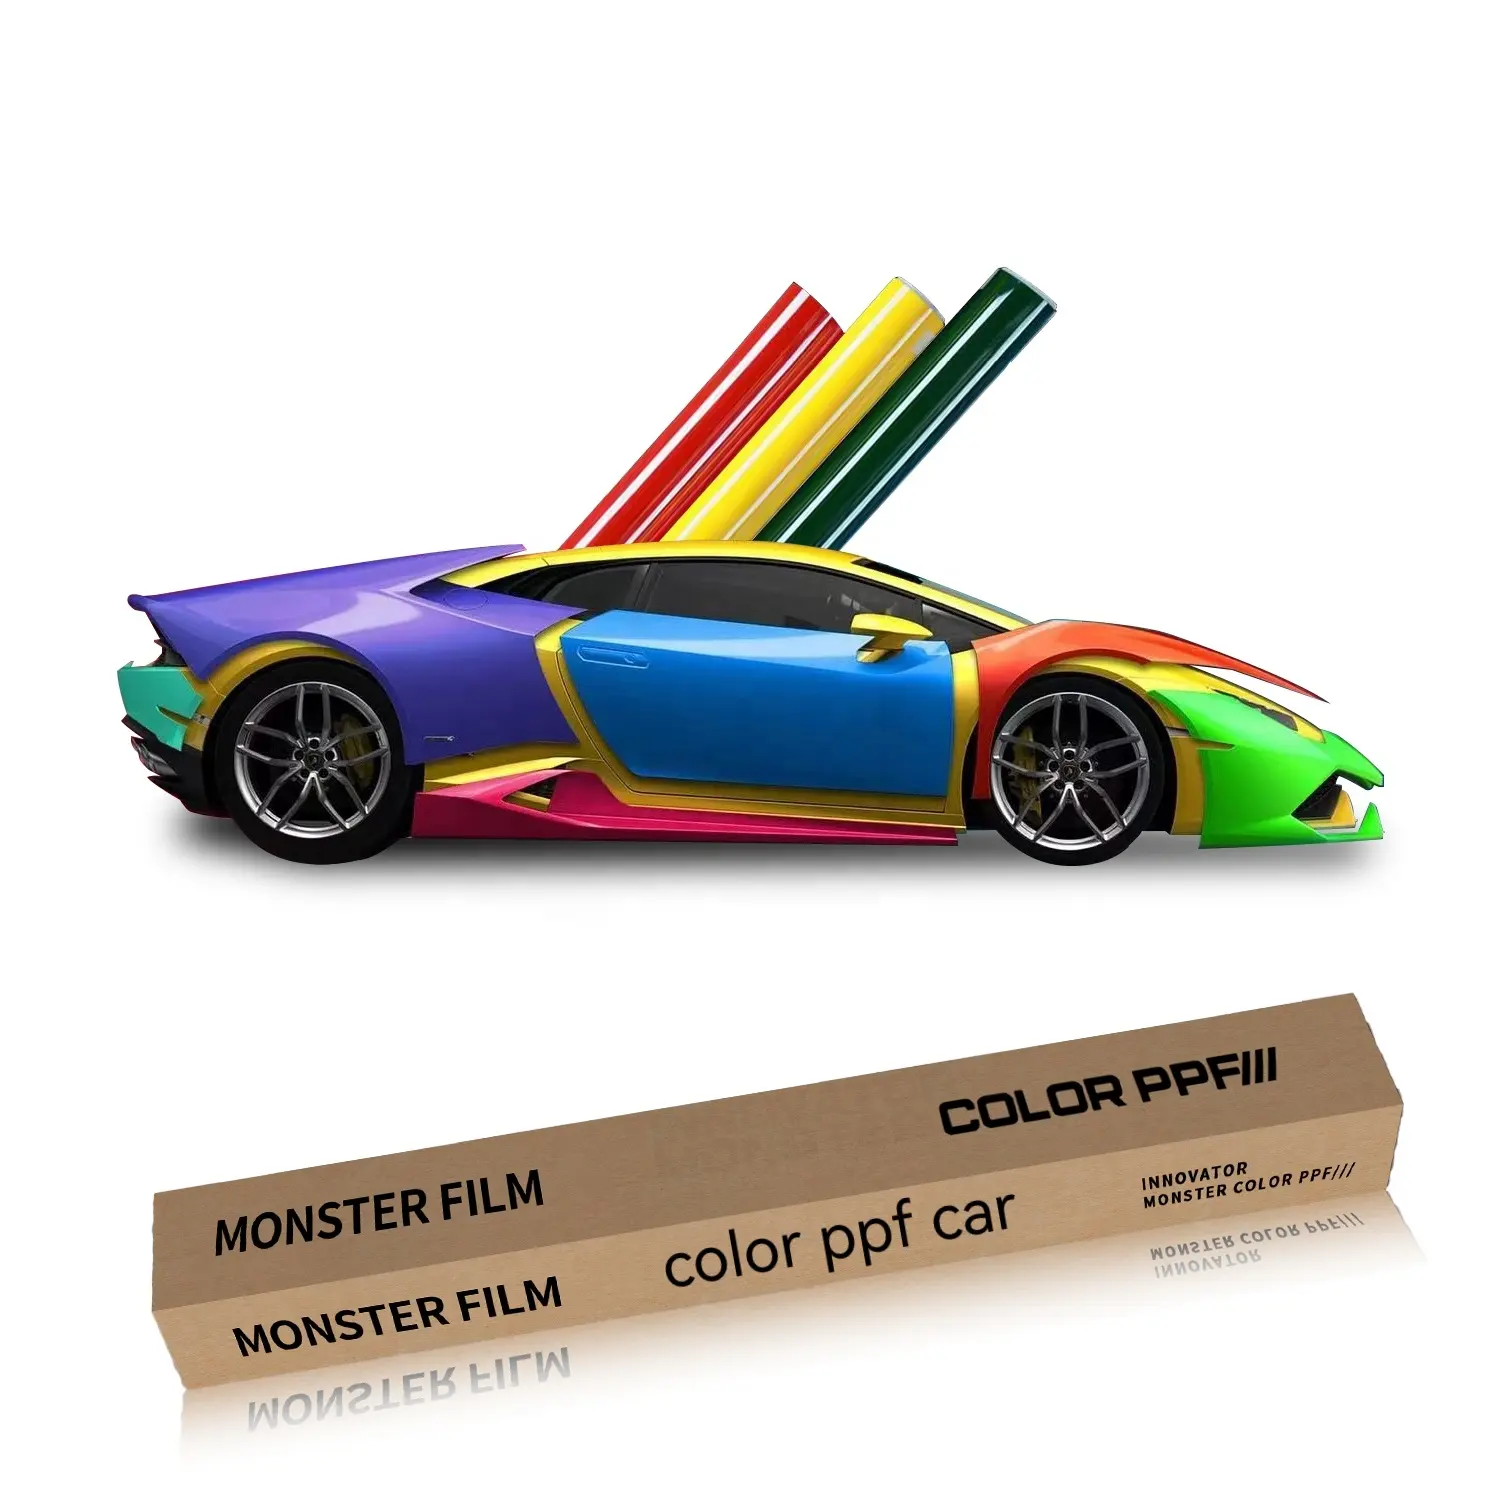 Para pintura do carro filme de proteção Lubrizol cor ppf alto brilho Transparente tpu 8mil 5 * 50FT cor ppf